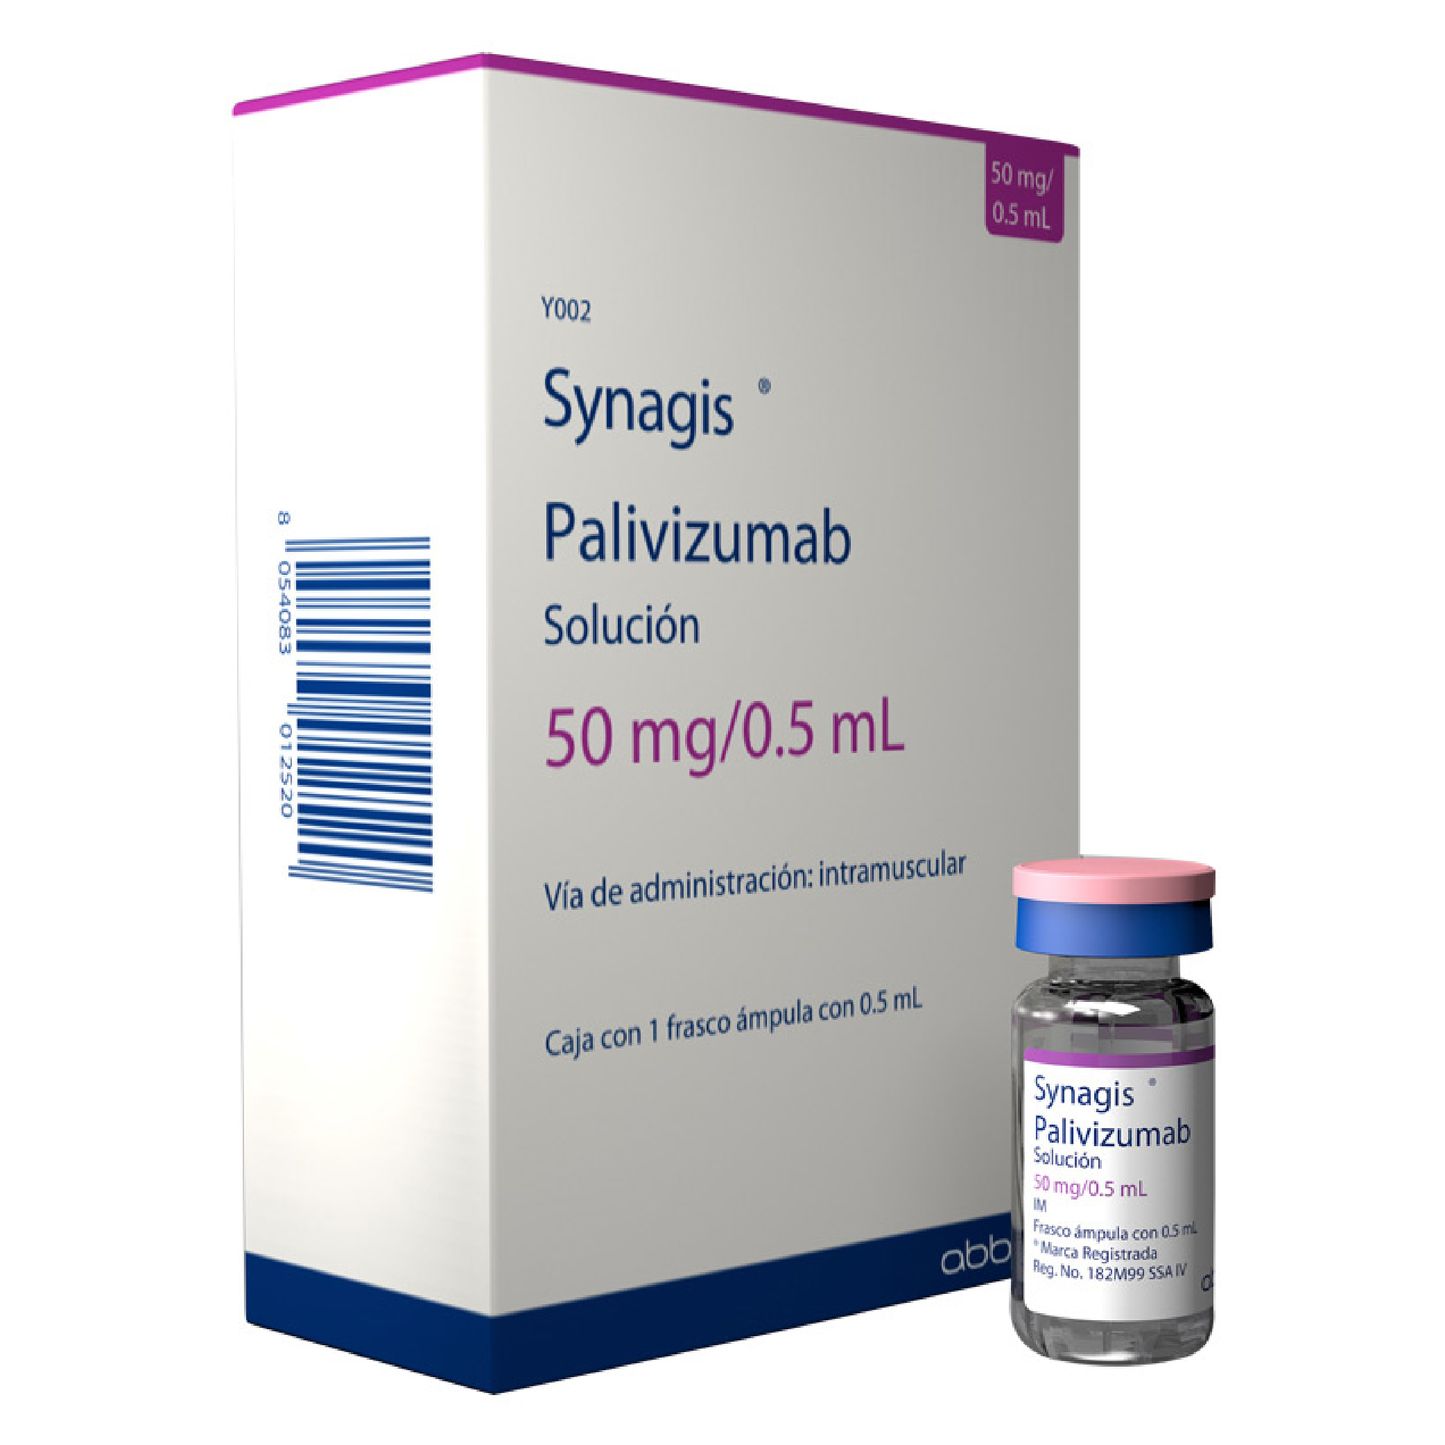 Synagis 50 mg/ 0.5 mL